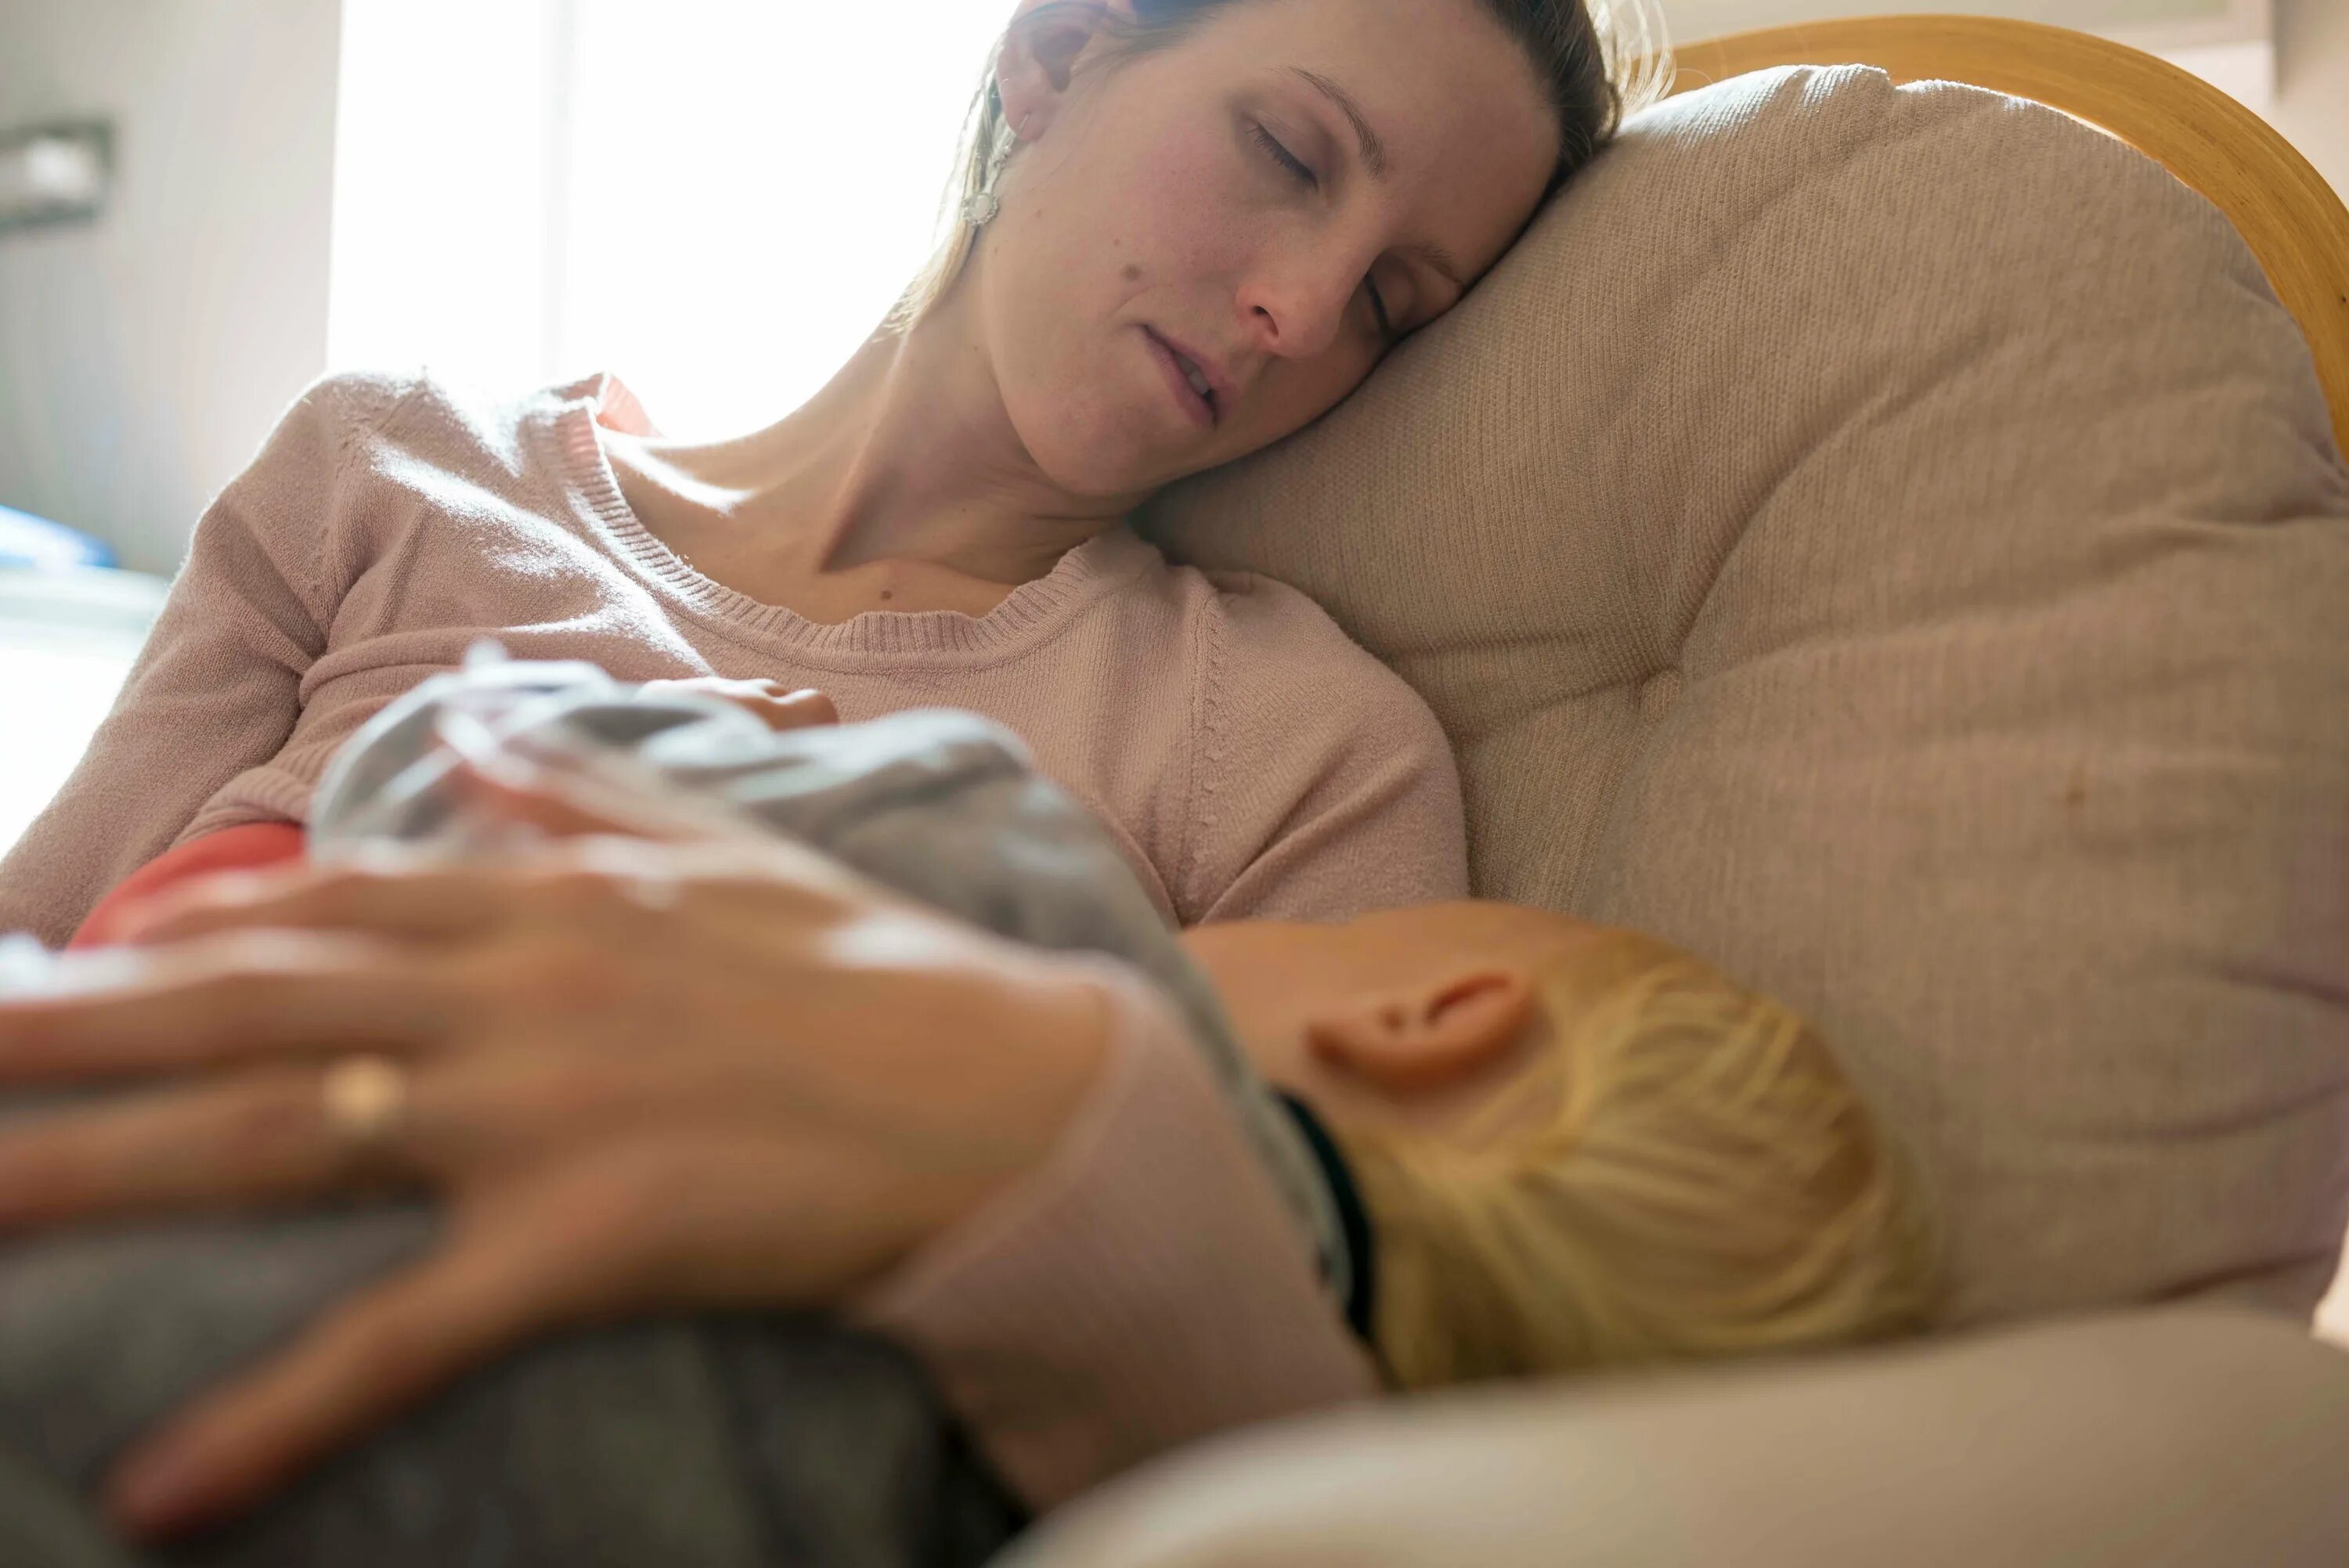 Real mom sleeps. Молодые родители и сон. Послеродовая депрессия фото. Слип послеродовой.